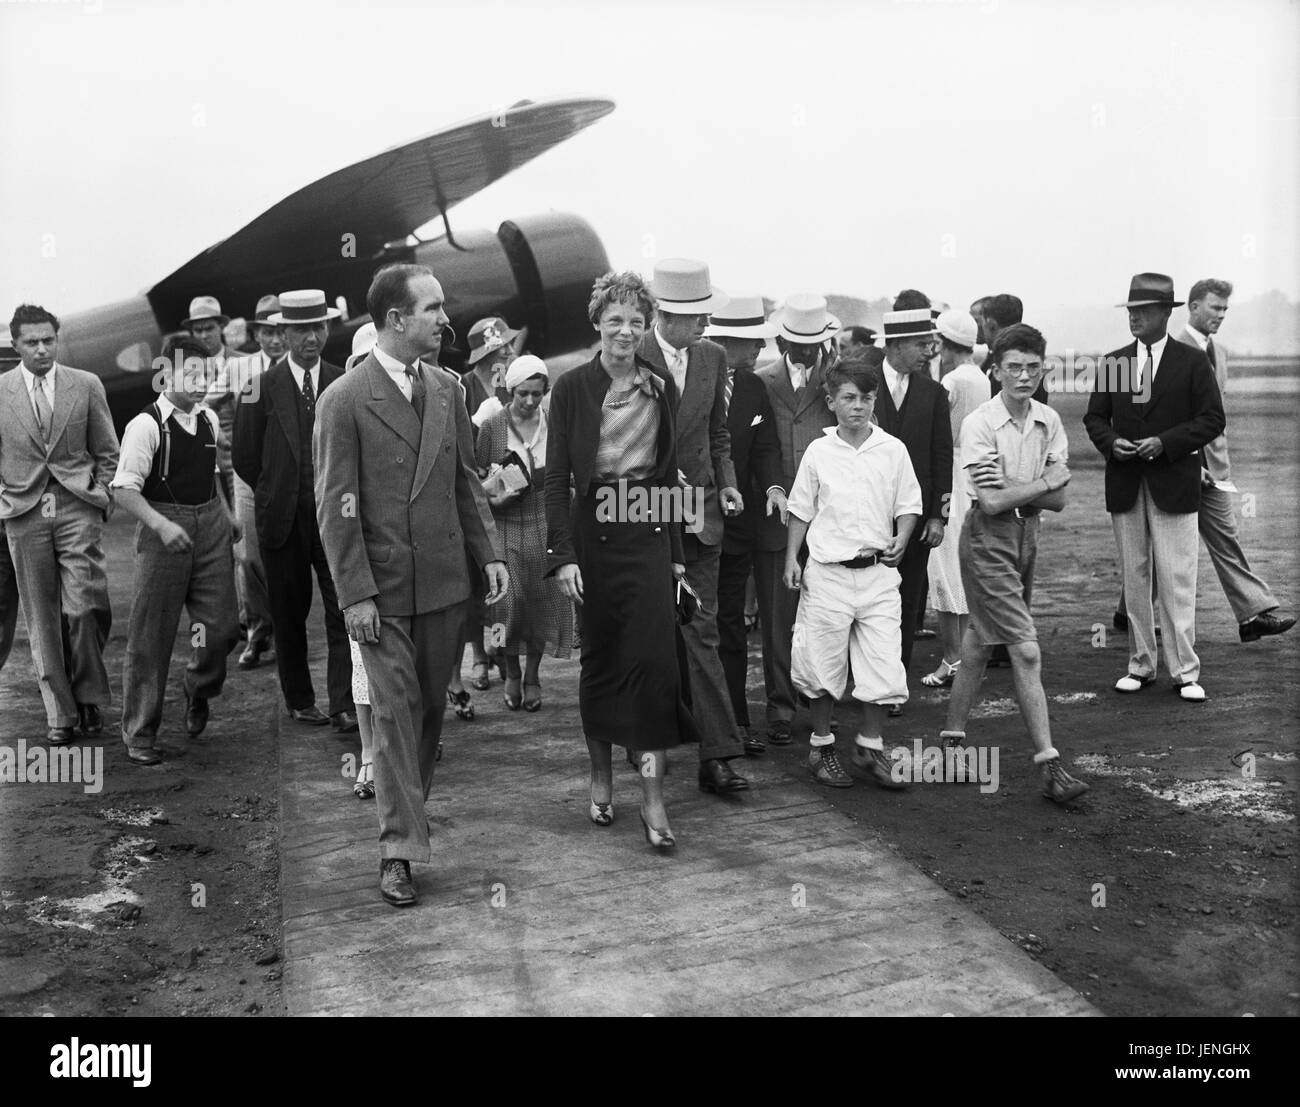 Amelia Earhart avec groupe de personnes près de l'avion, Harris et Ewing, 1932 Banque D'Images